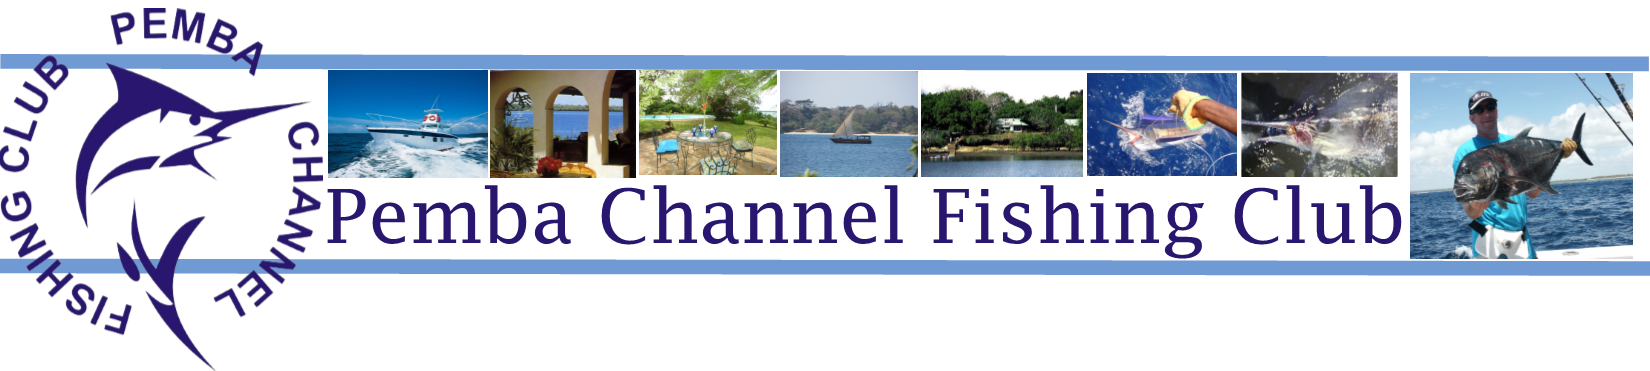 Pemba Channel Fishing Club Logo